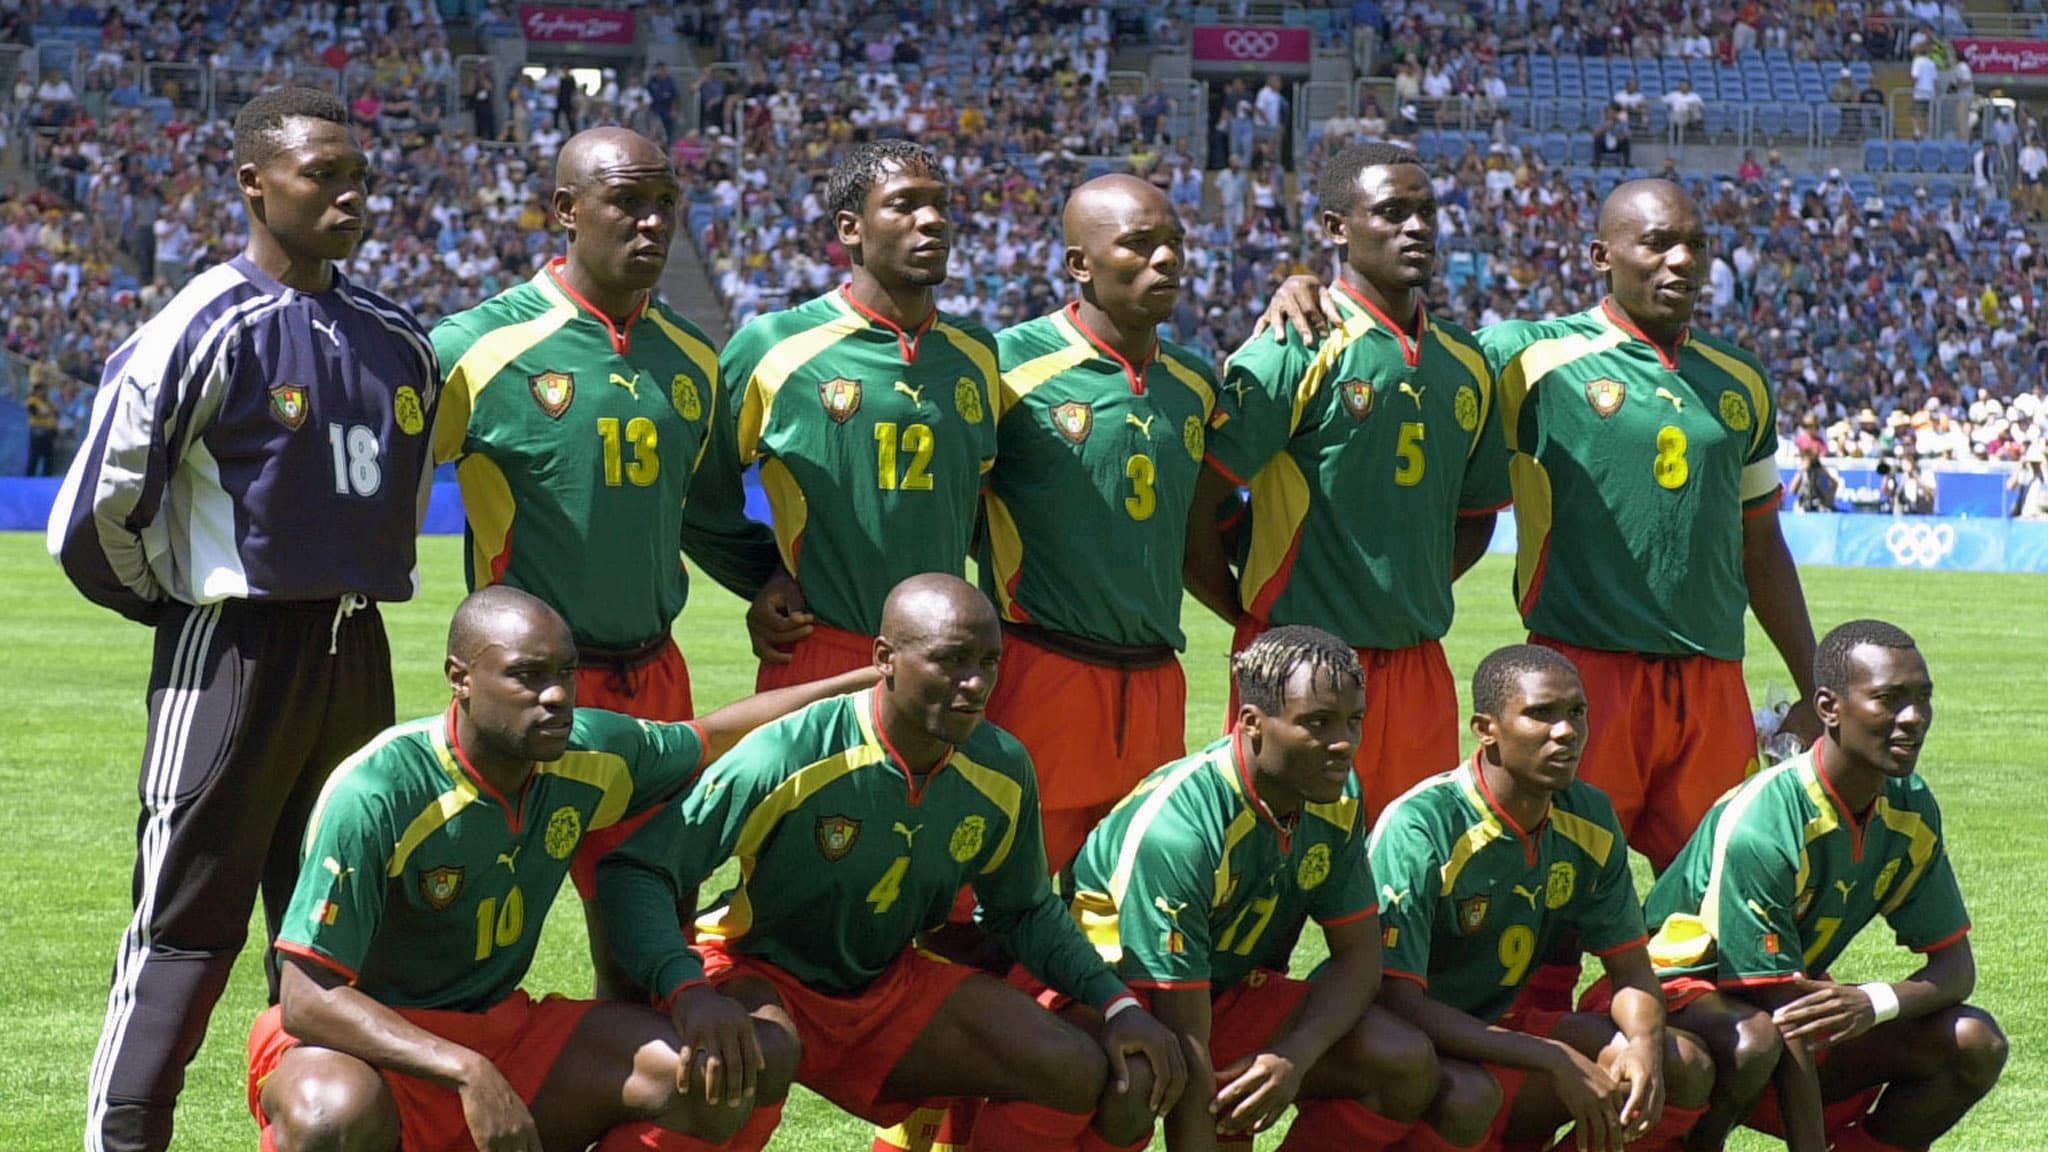 منتخب أسود الكاميرون 2000